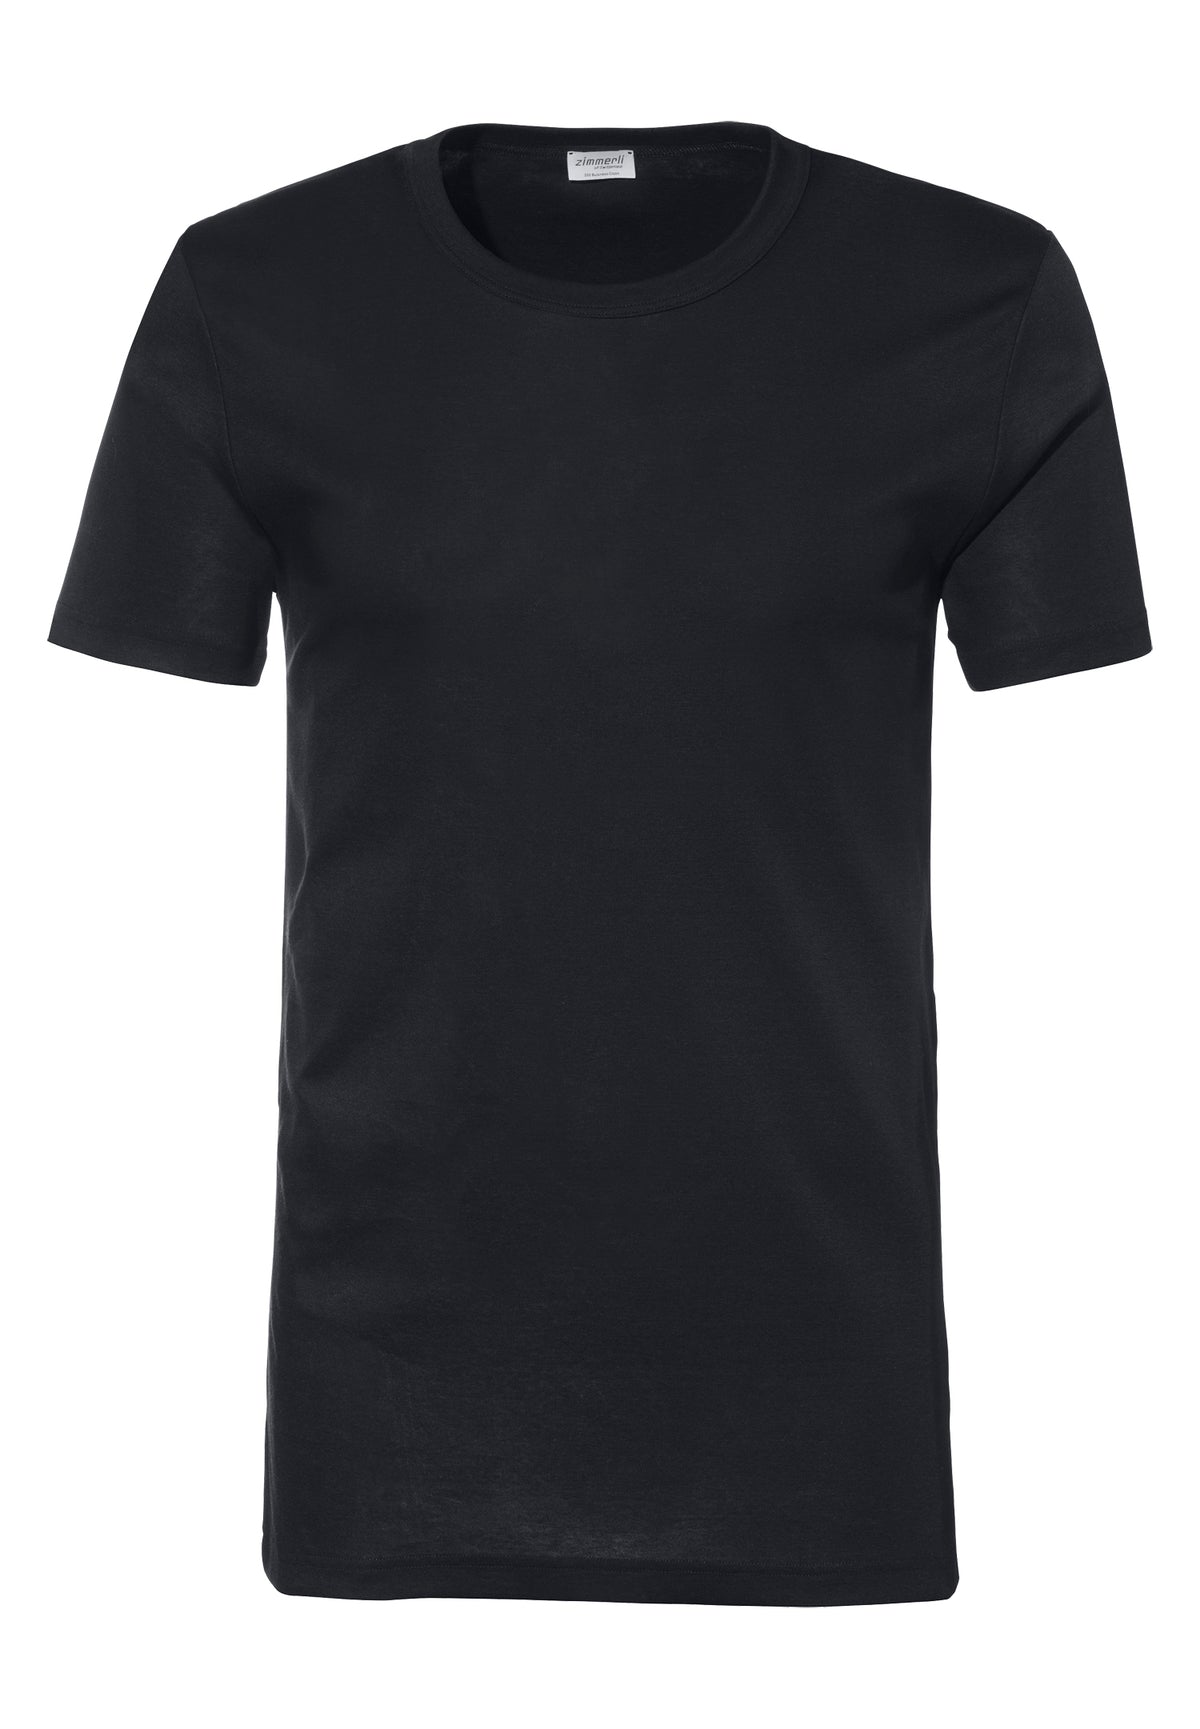 Business Class | T-Shirt à manches courtes - black